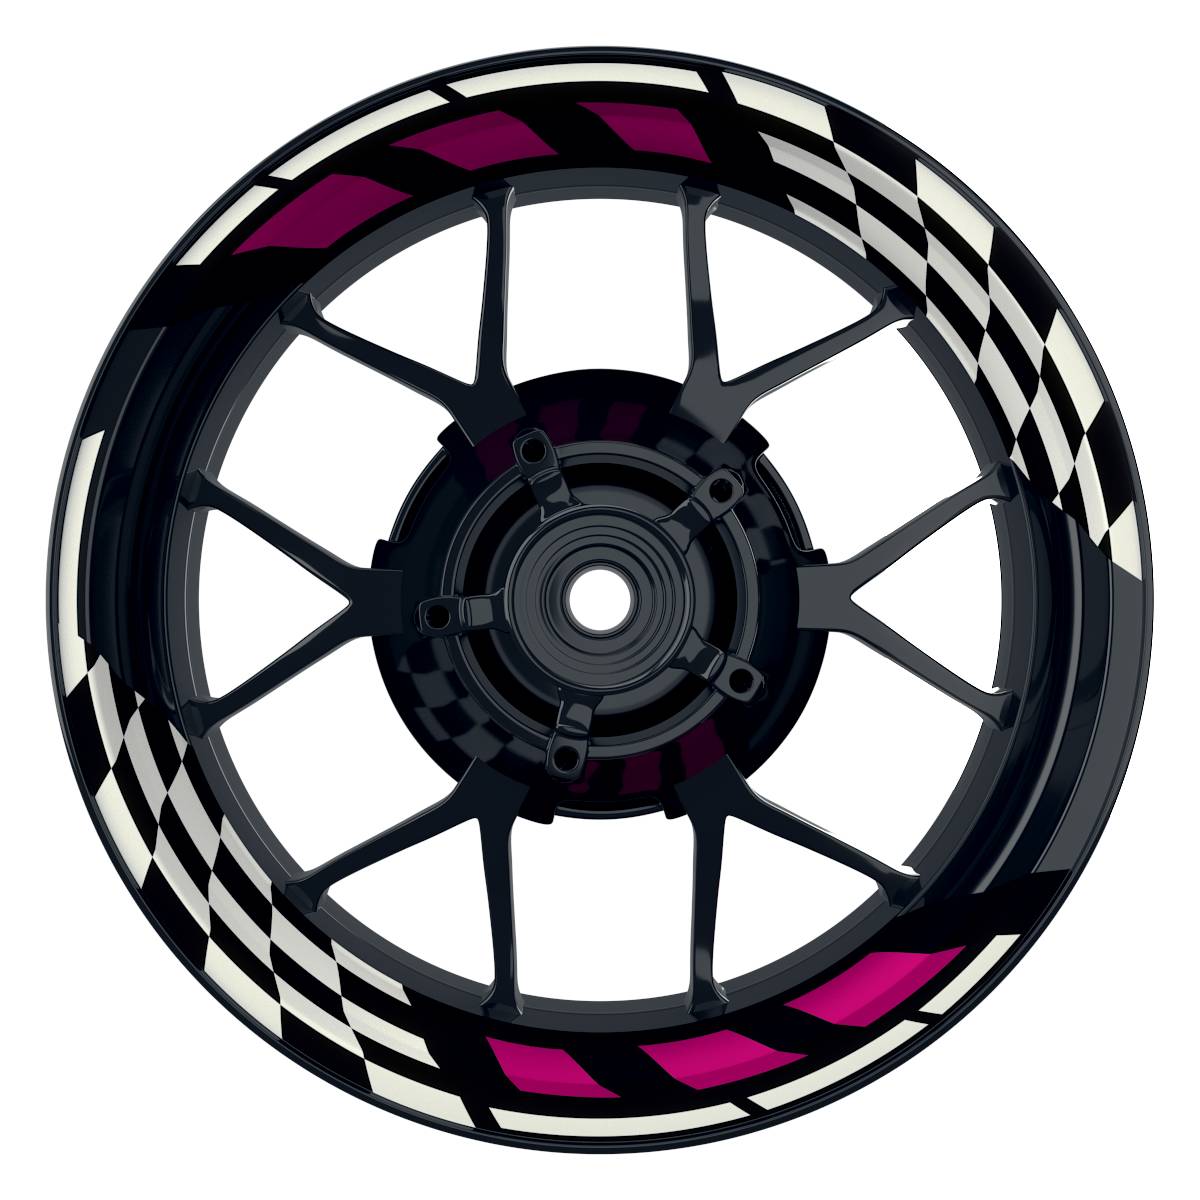 RACE schwarz pink Frontansicht